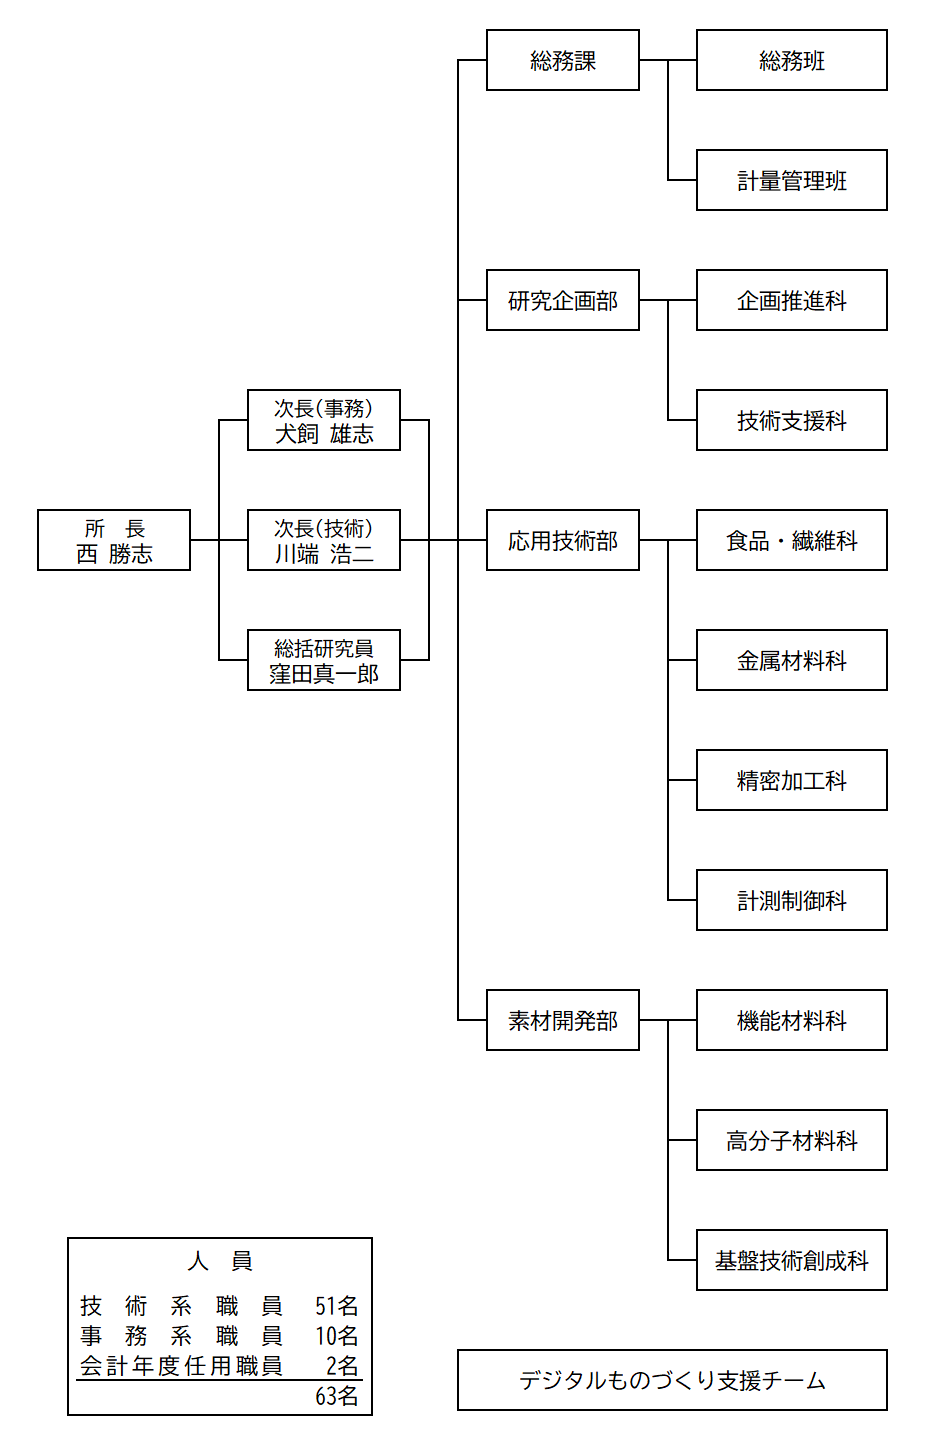 岡山県工業技術センターのR5年度からの組織図